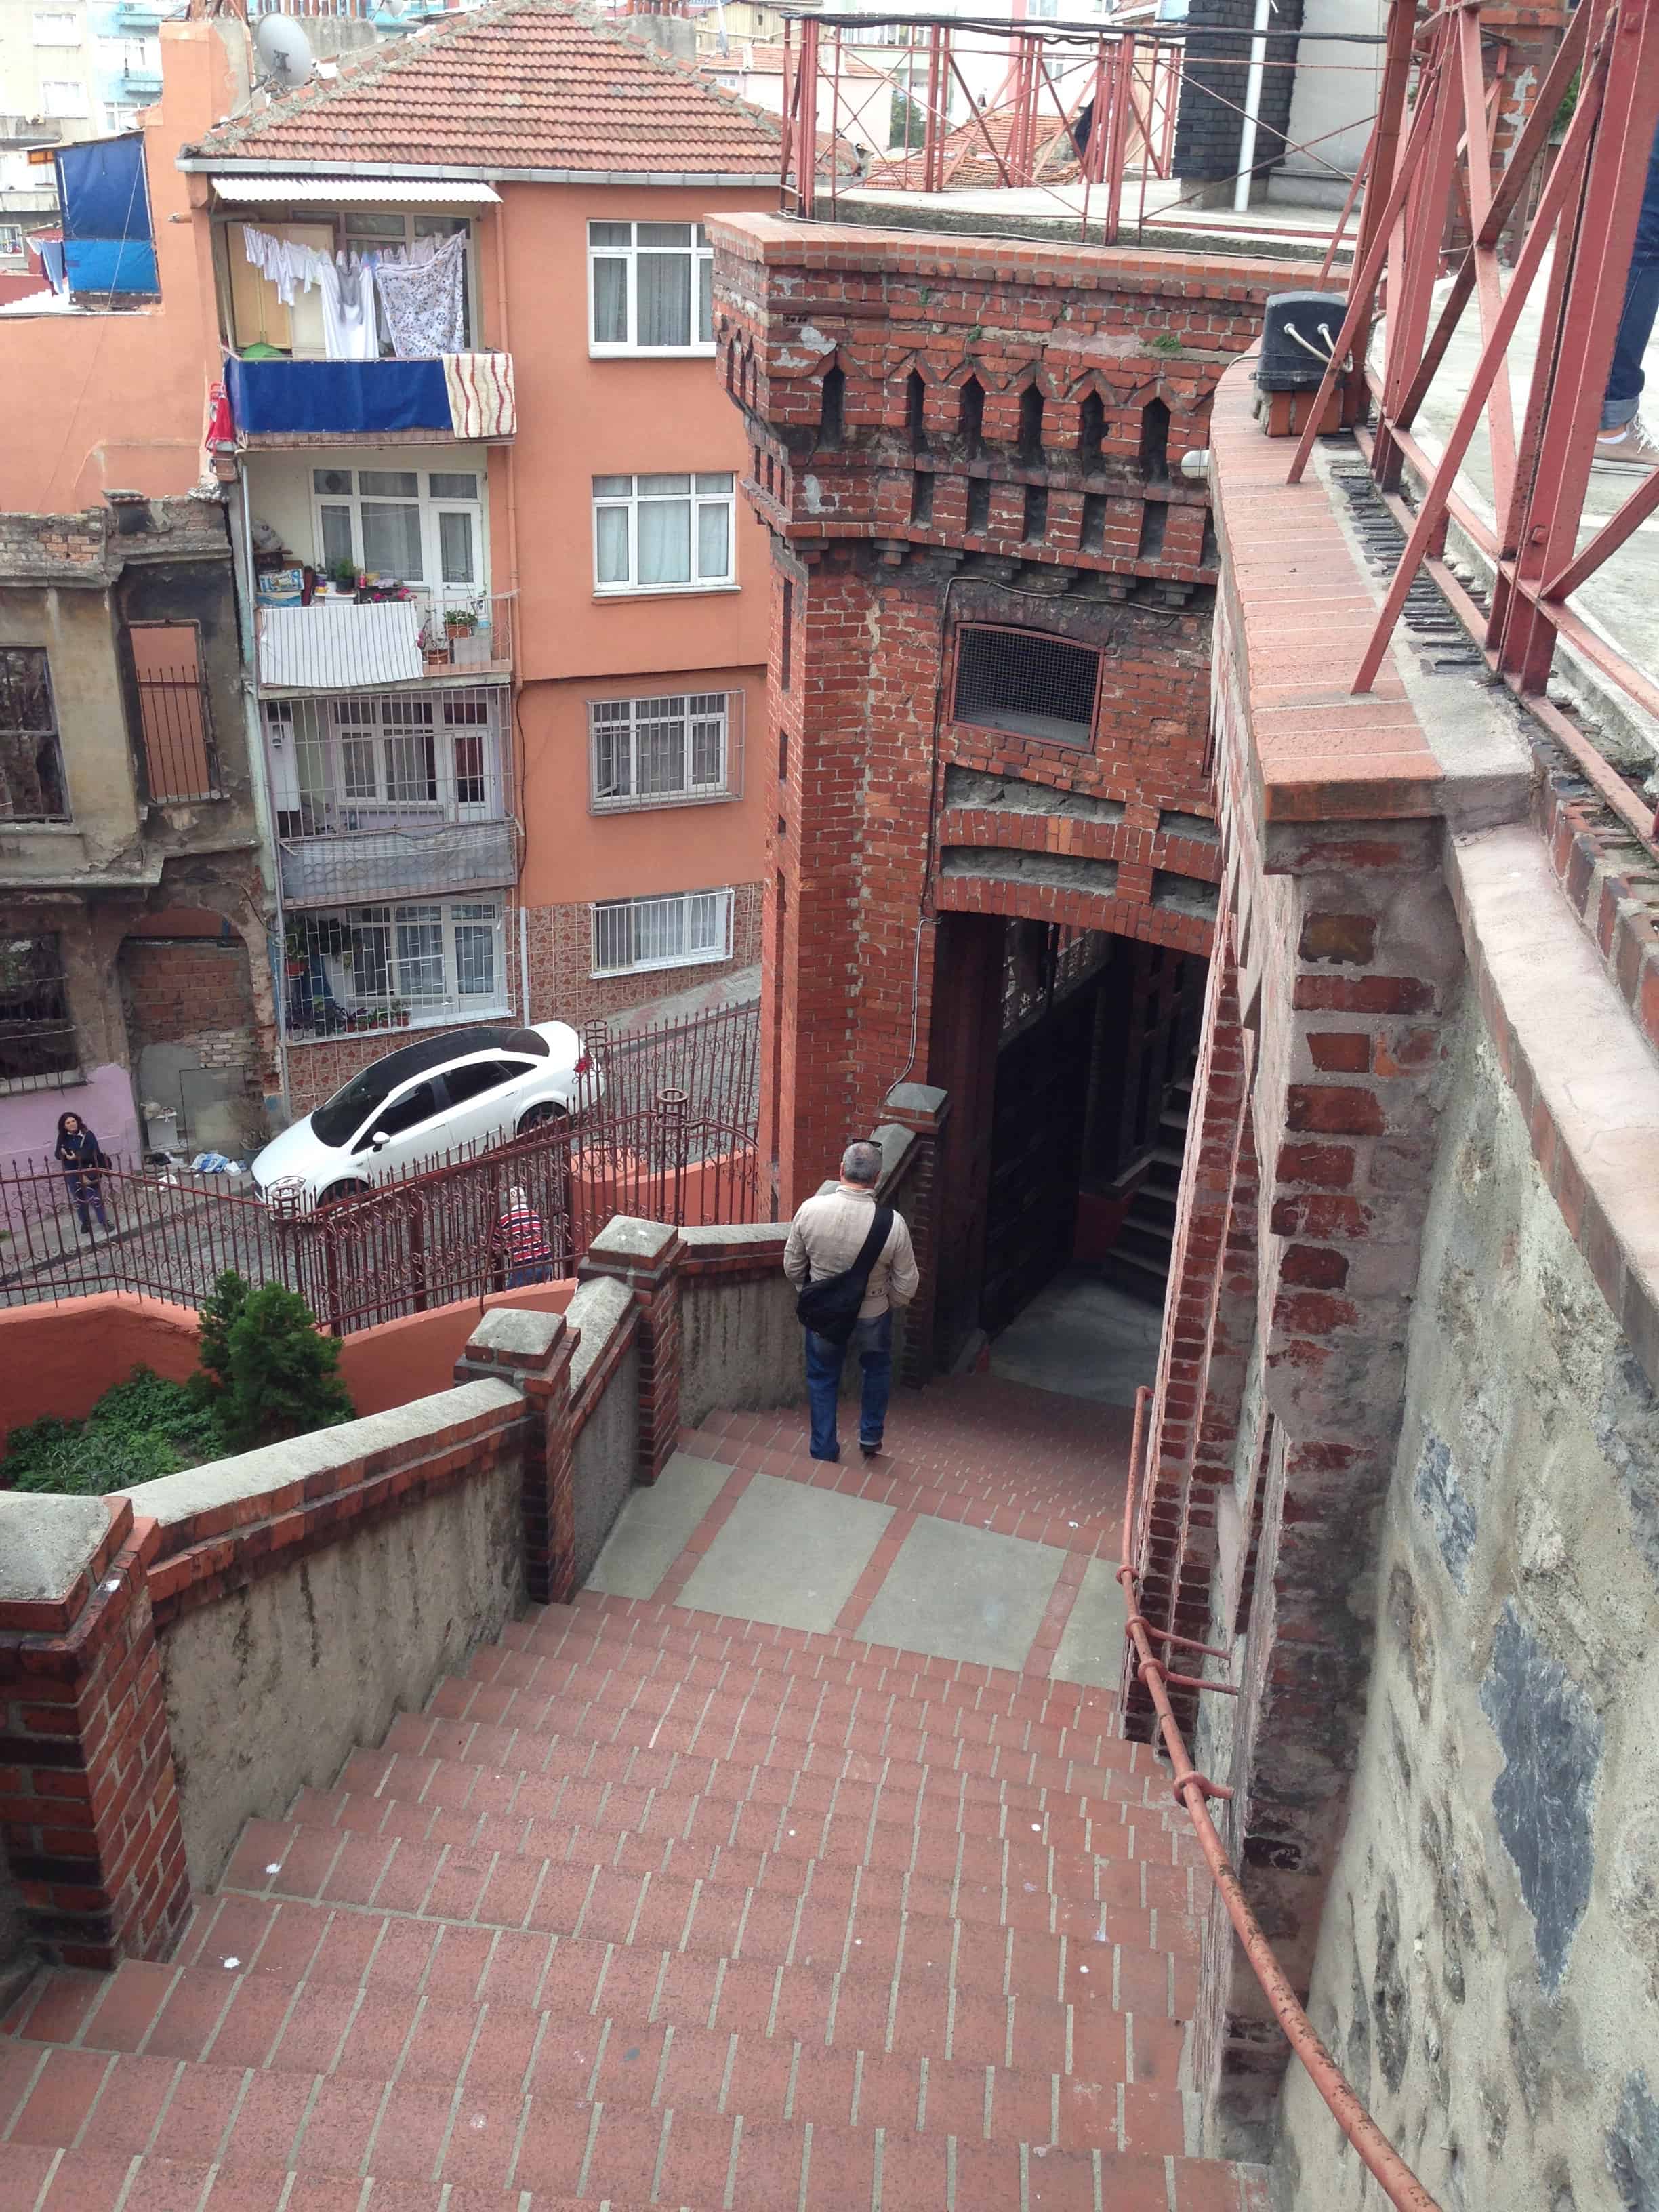 Stairway to street level at Phanar Greek Orthodox College in Fener, Istanbul, Turkey